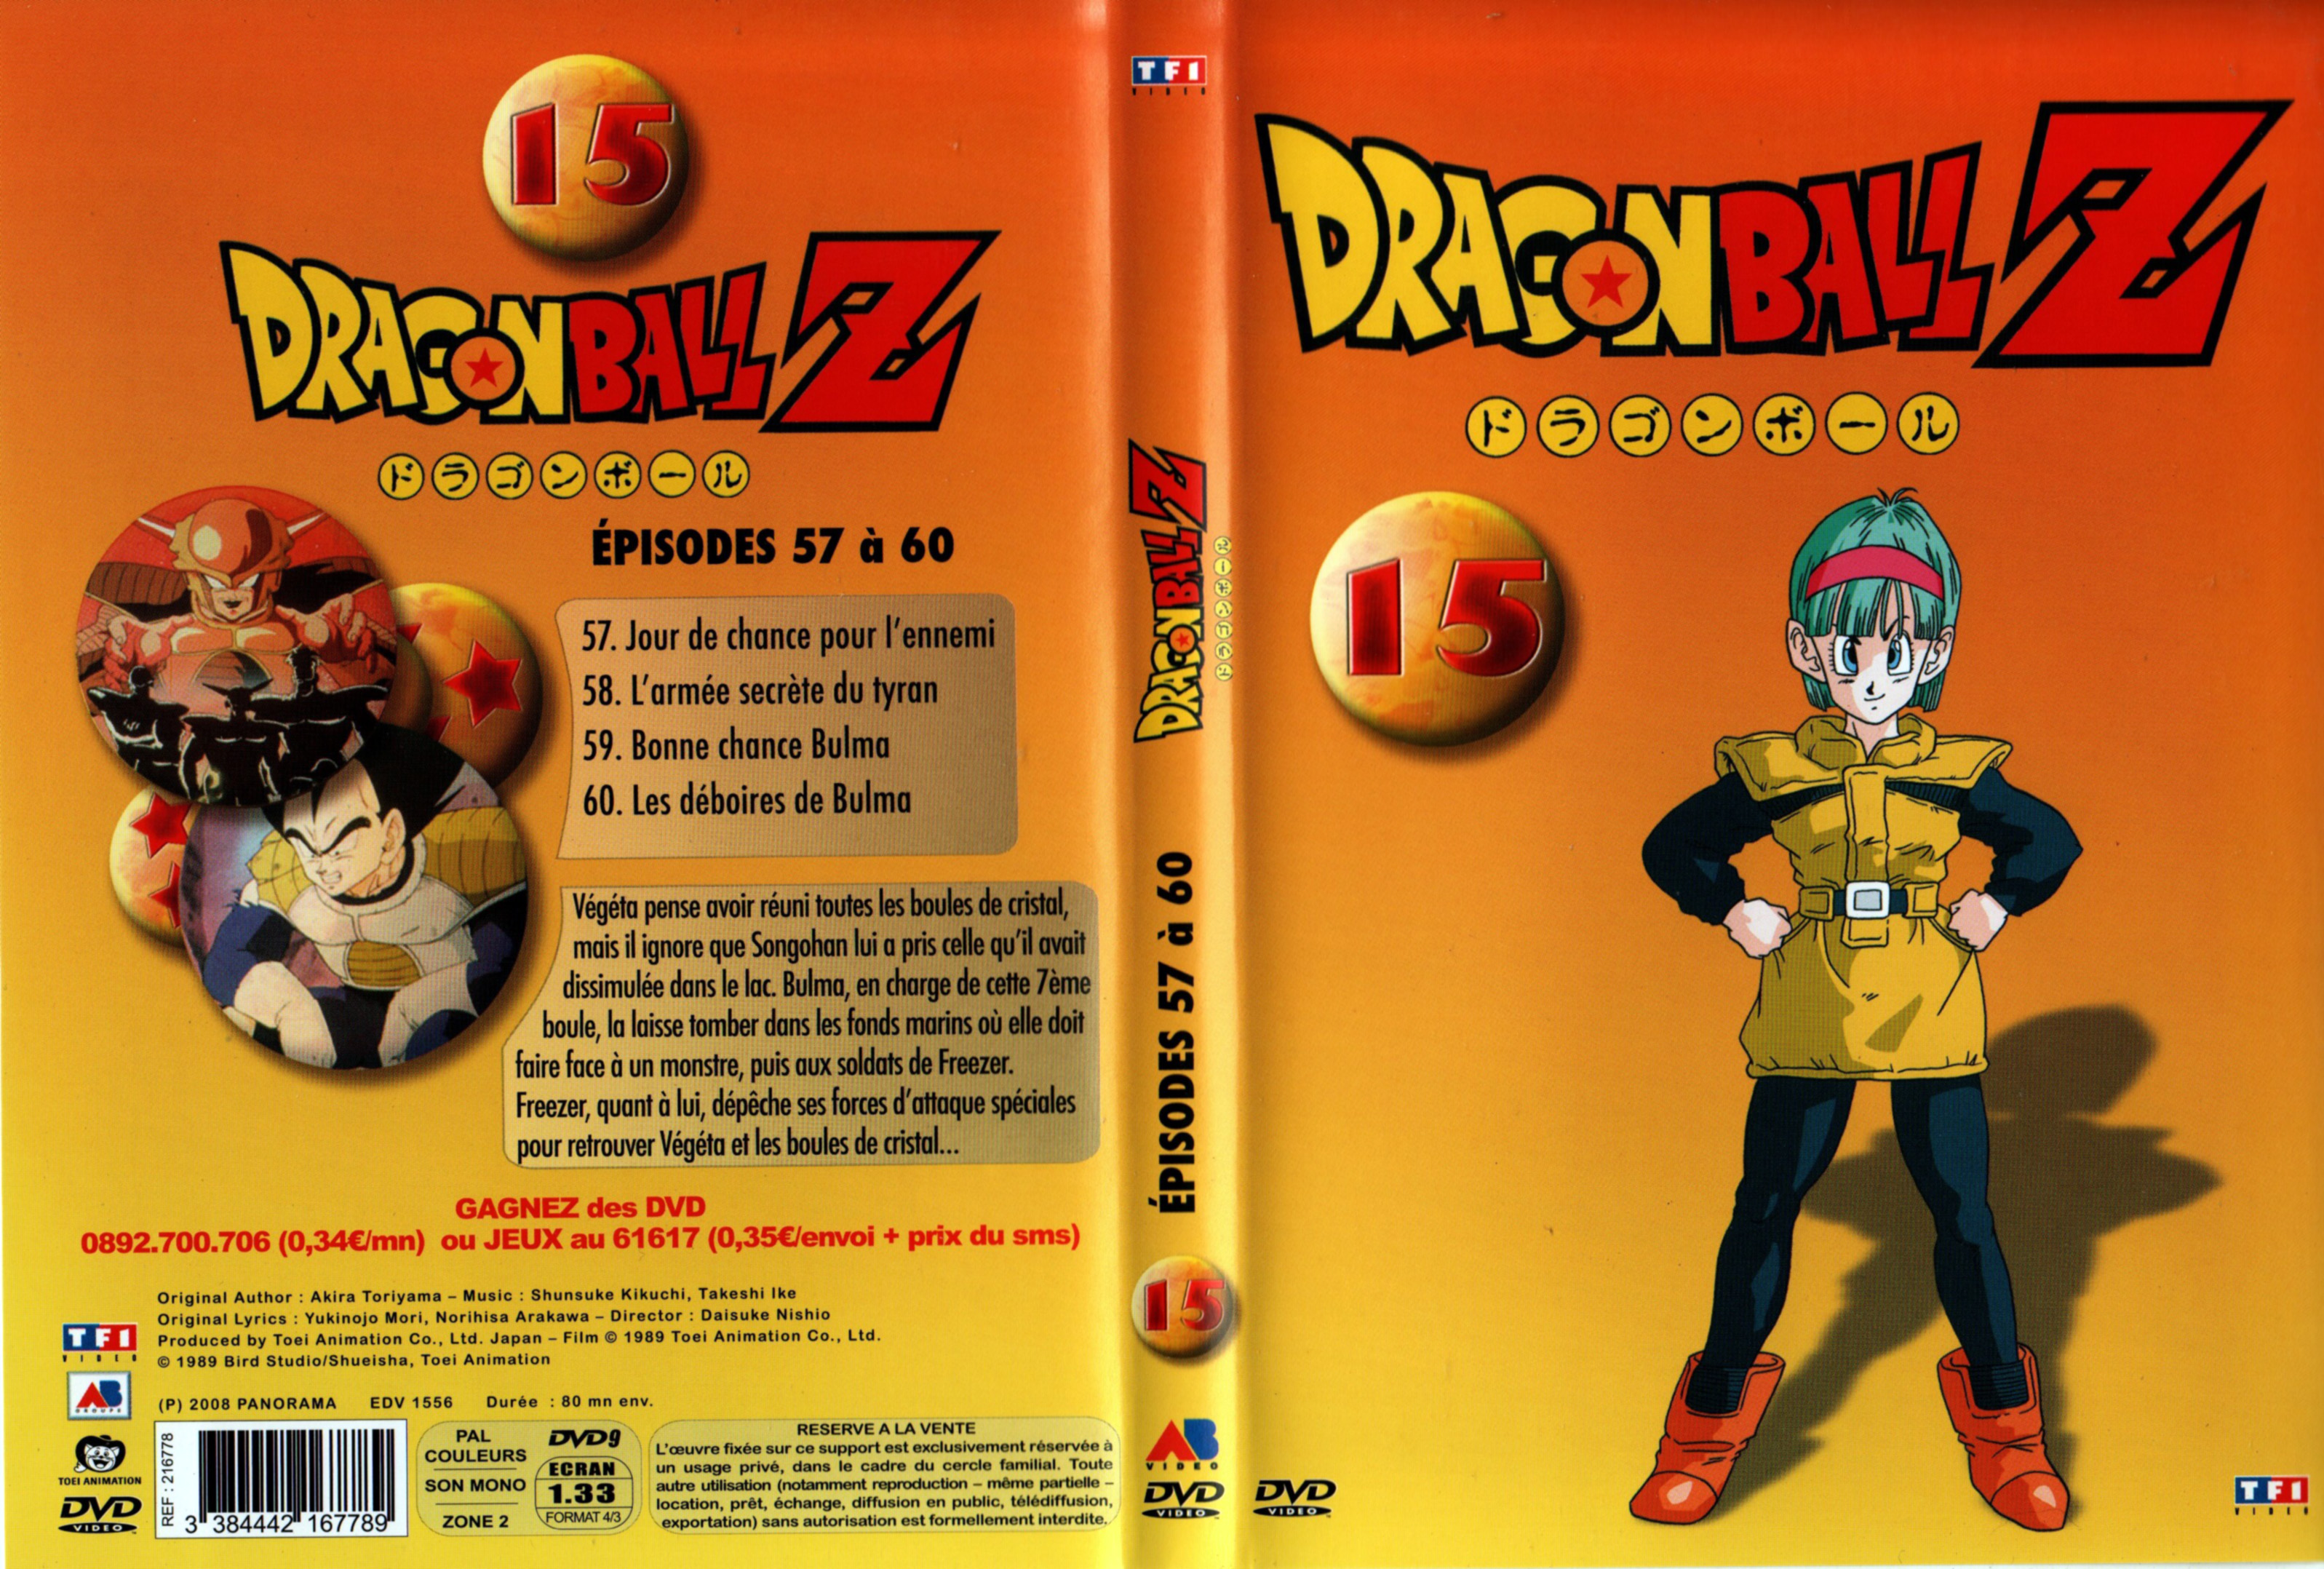 Jaquette DVD Dragon Ball Z vol 15 v2